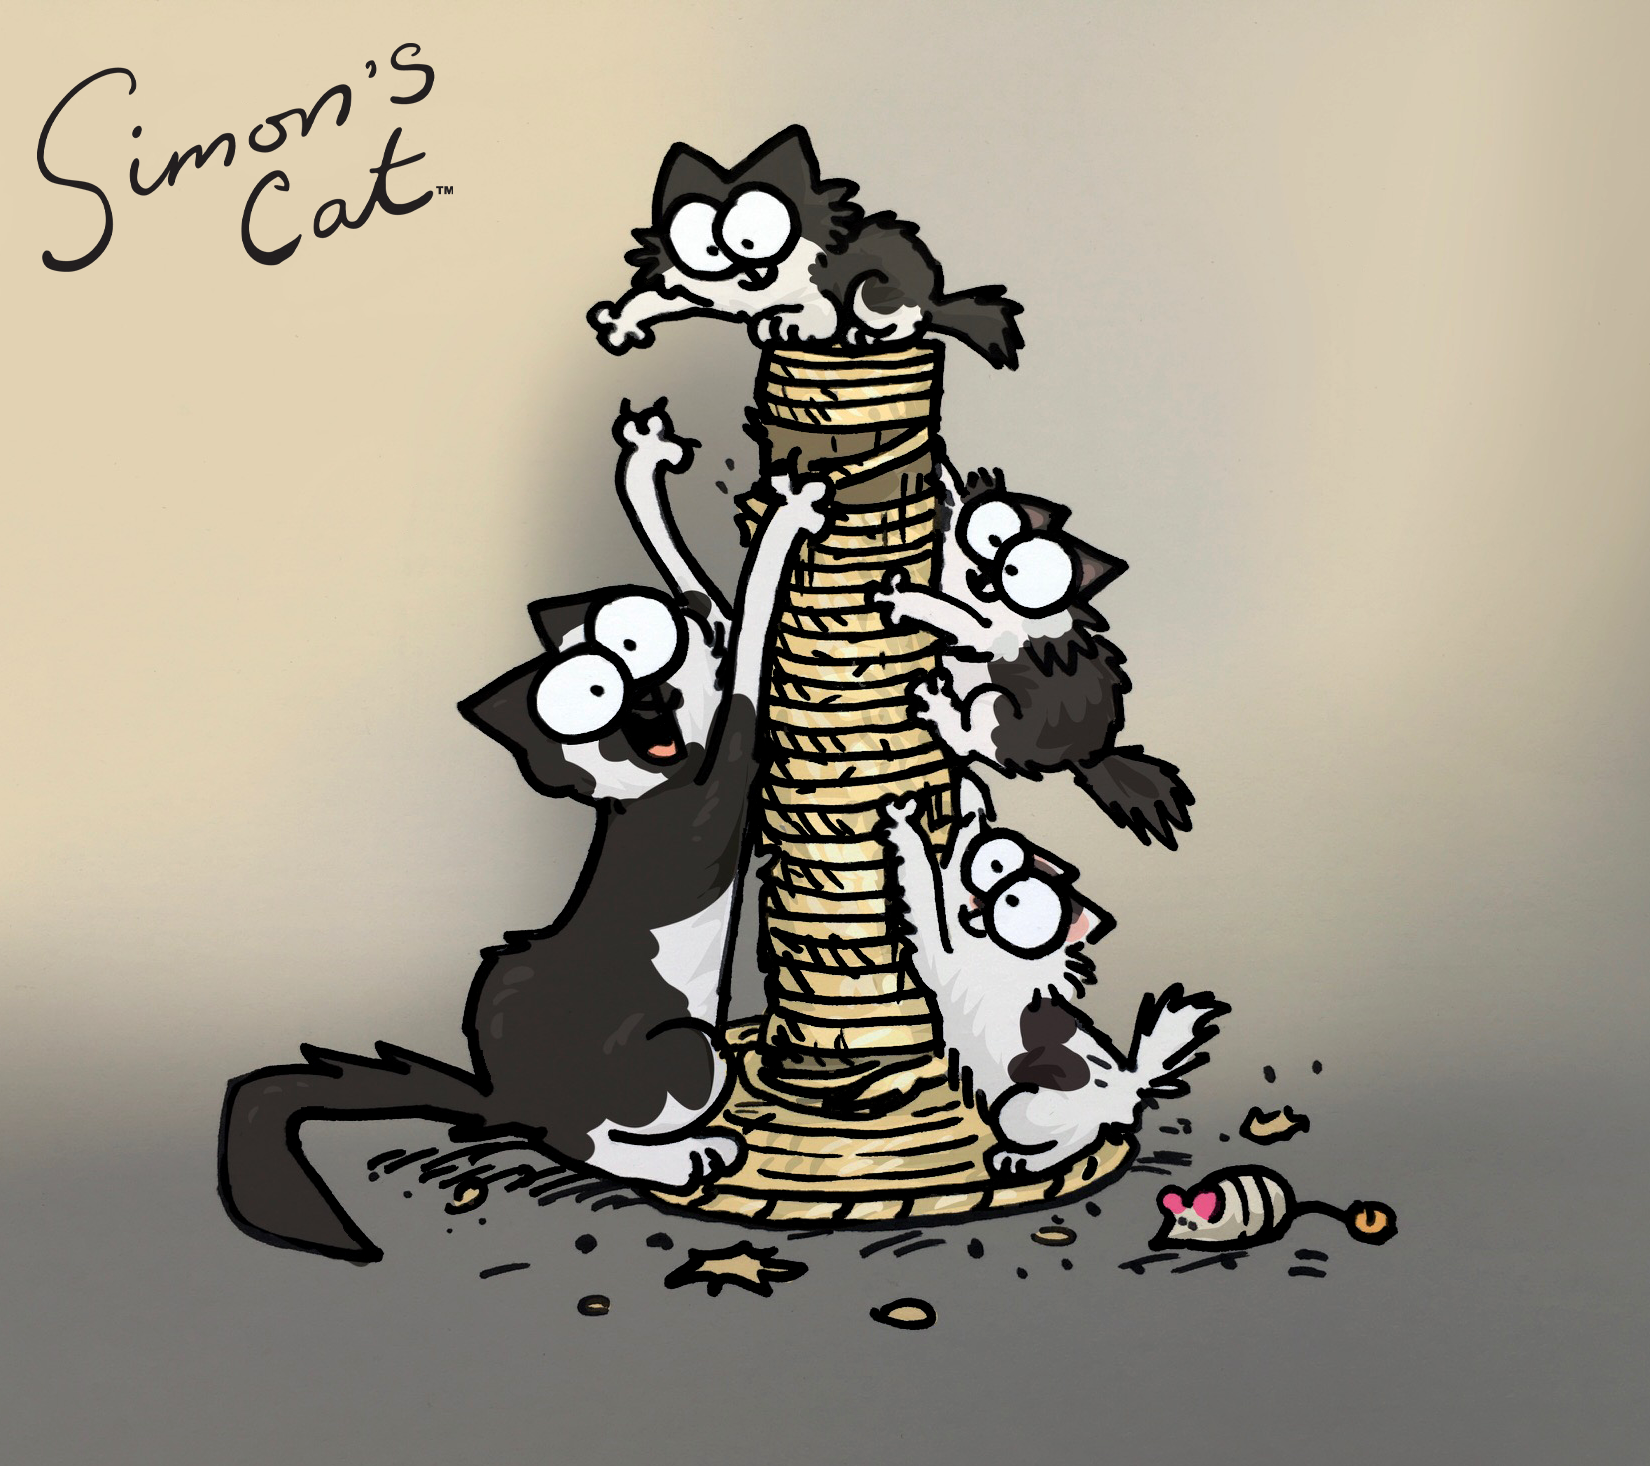 Sponsorkatten Princess och hennes söta kattungar har ritats av den berömda illustratören Simon Tofield